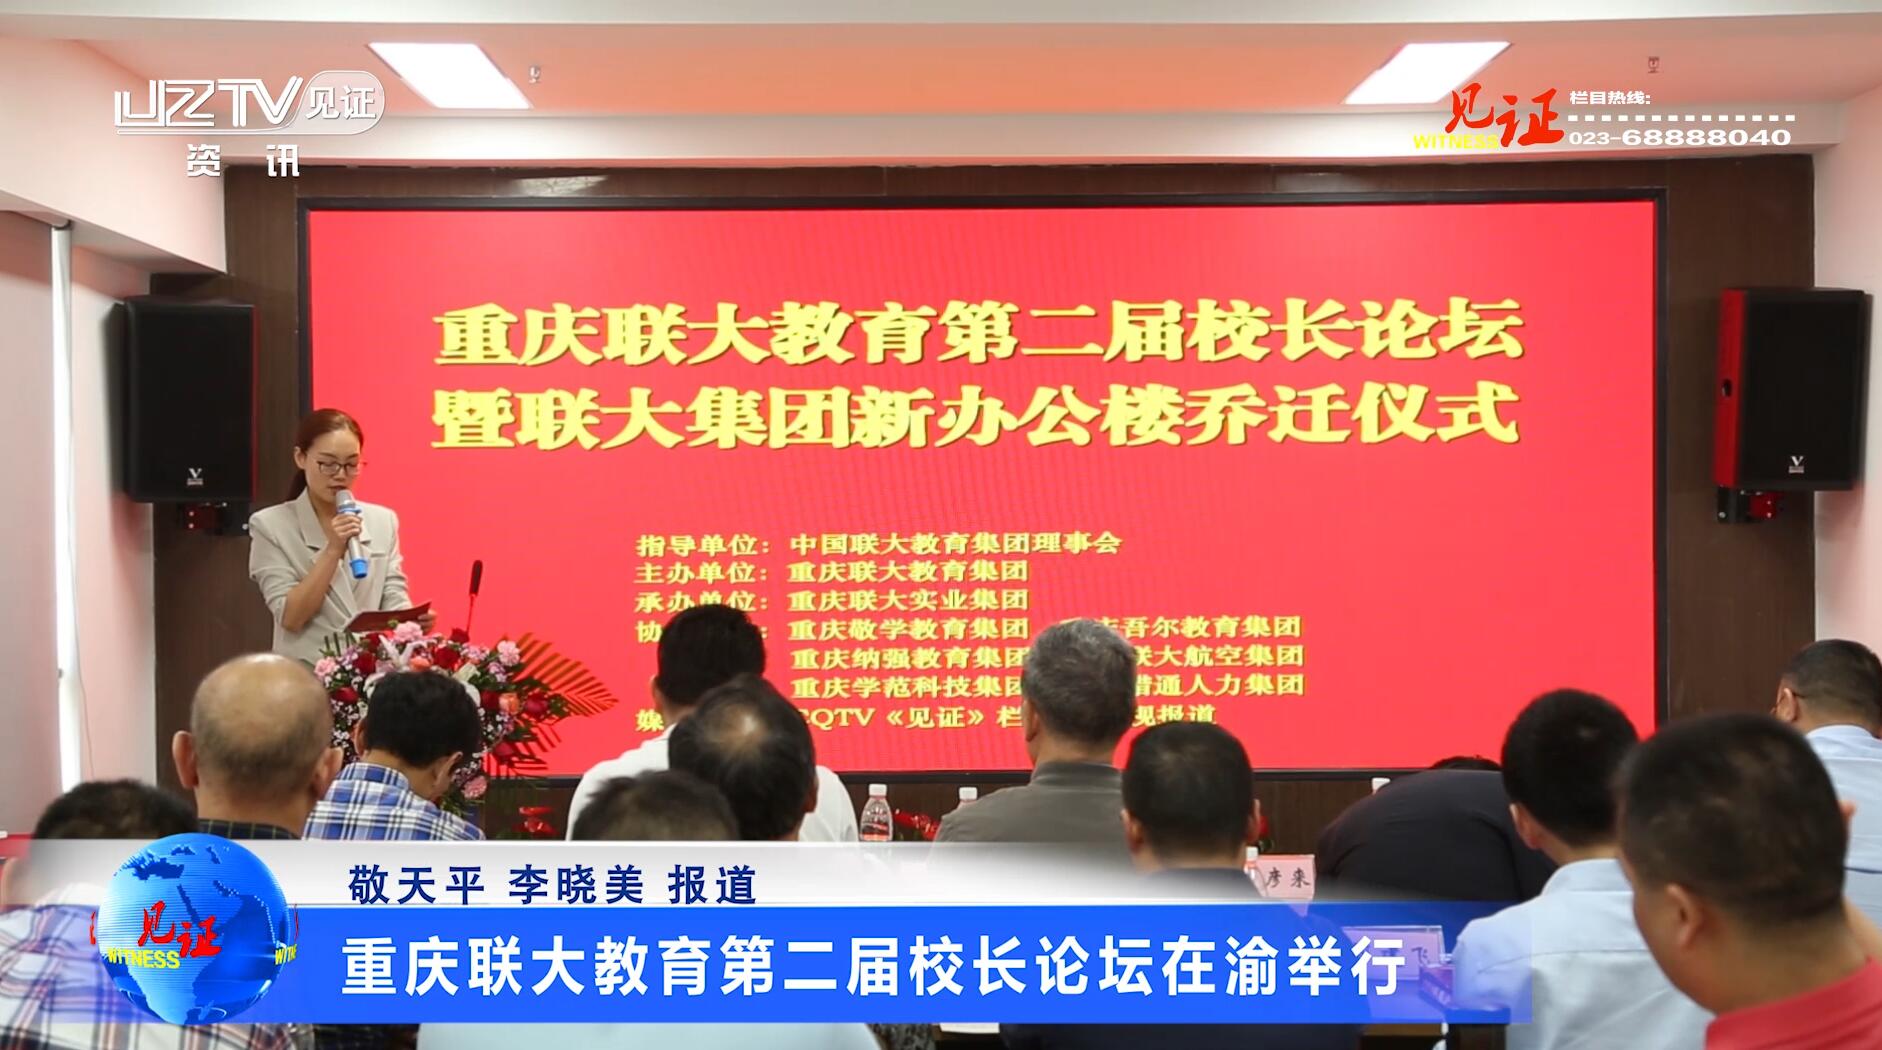  【见证·视频】重庆联大教育第二届校长论坛在渝举行